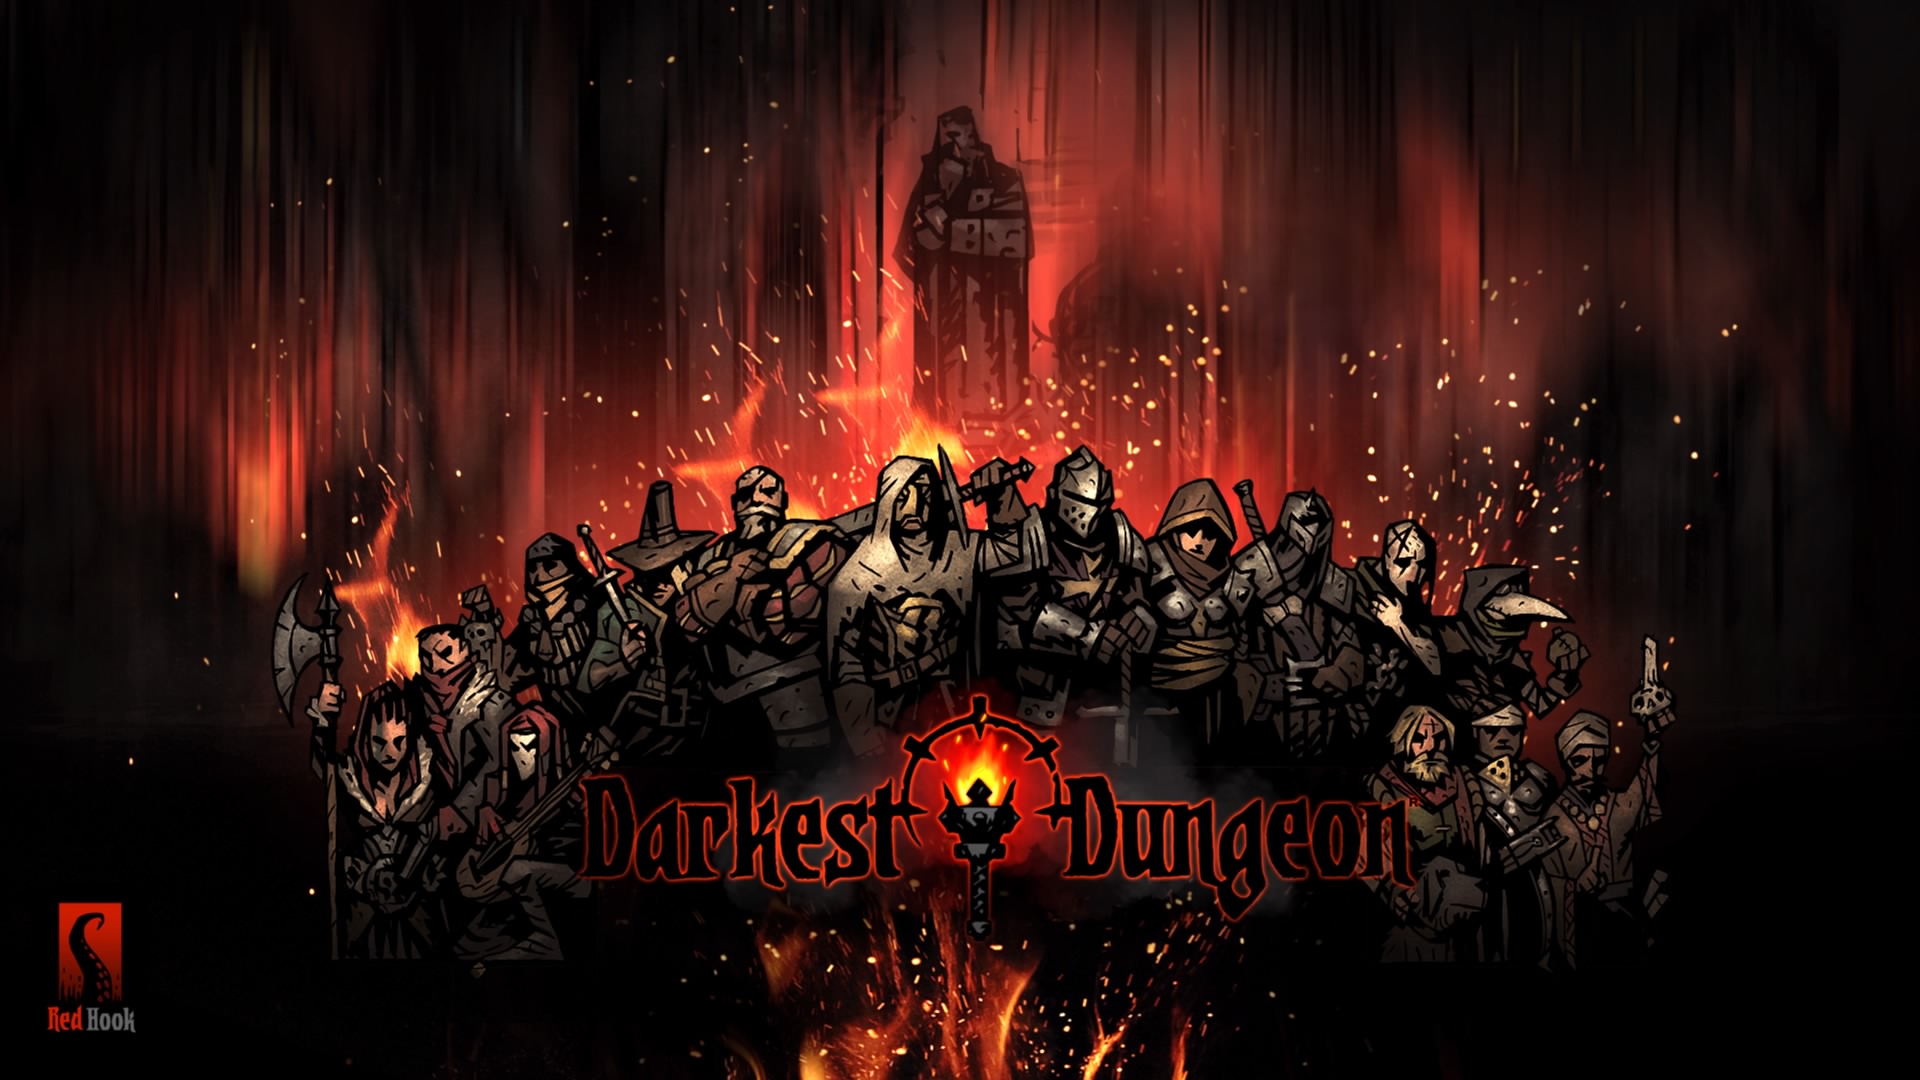 darkest dungeon 2 release date ps4